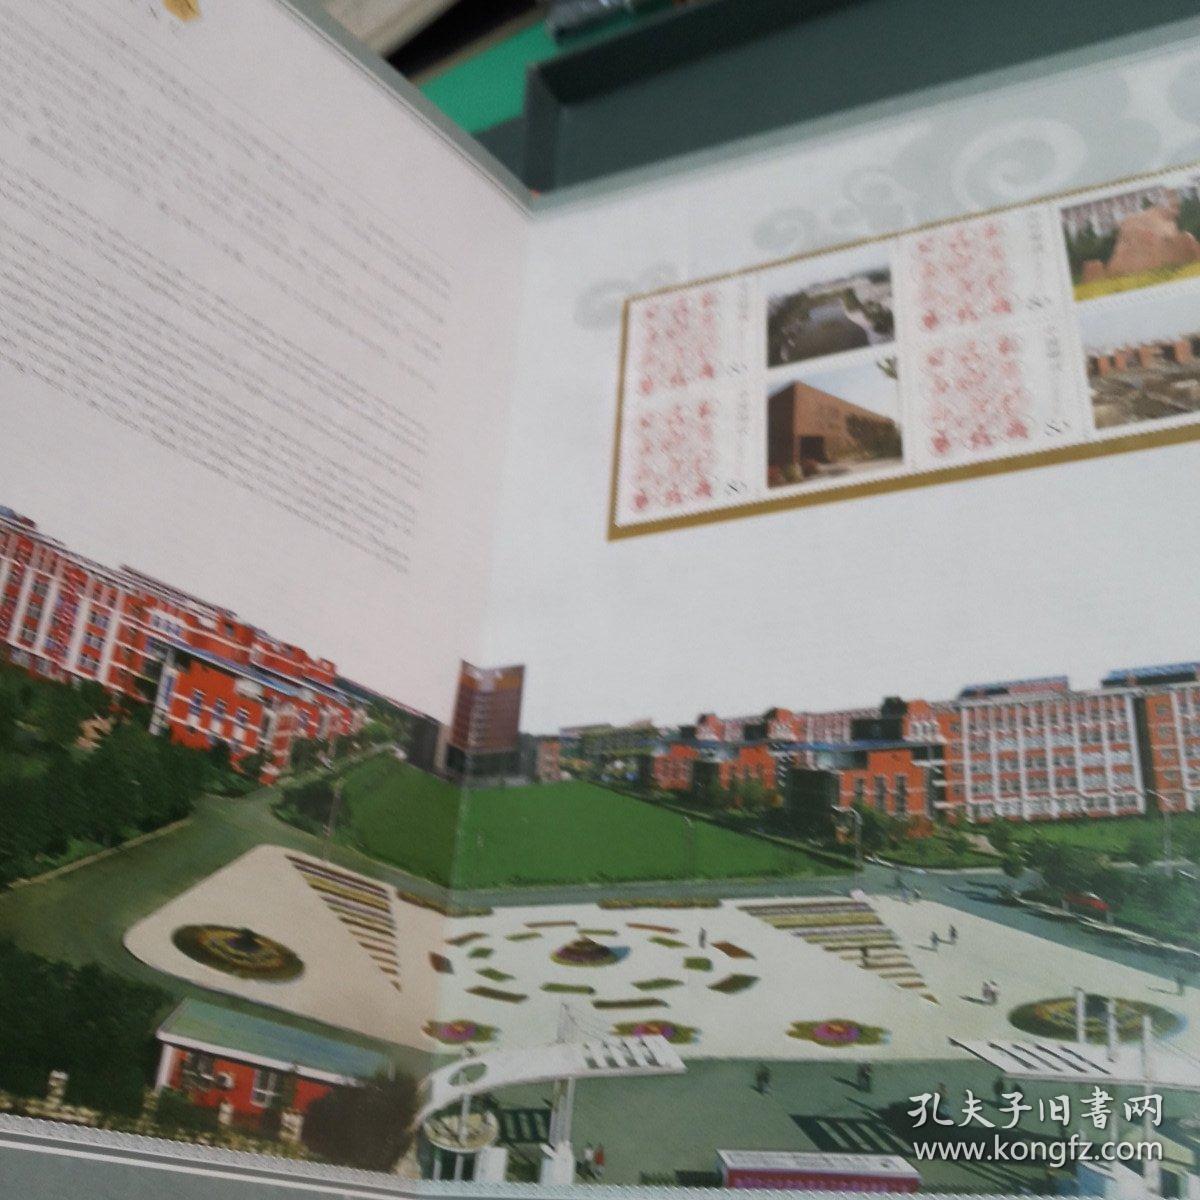 【邮品类】郑州师范学院纪念邮册（带函套）10张20面25枚邮票，邮票珍藏